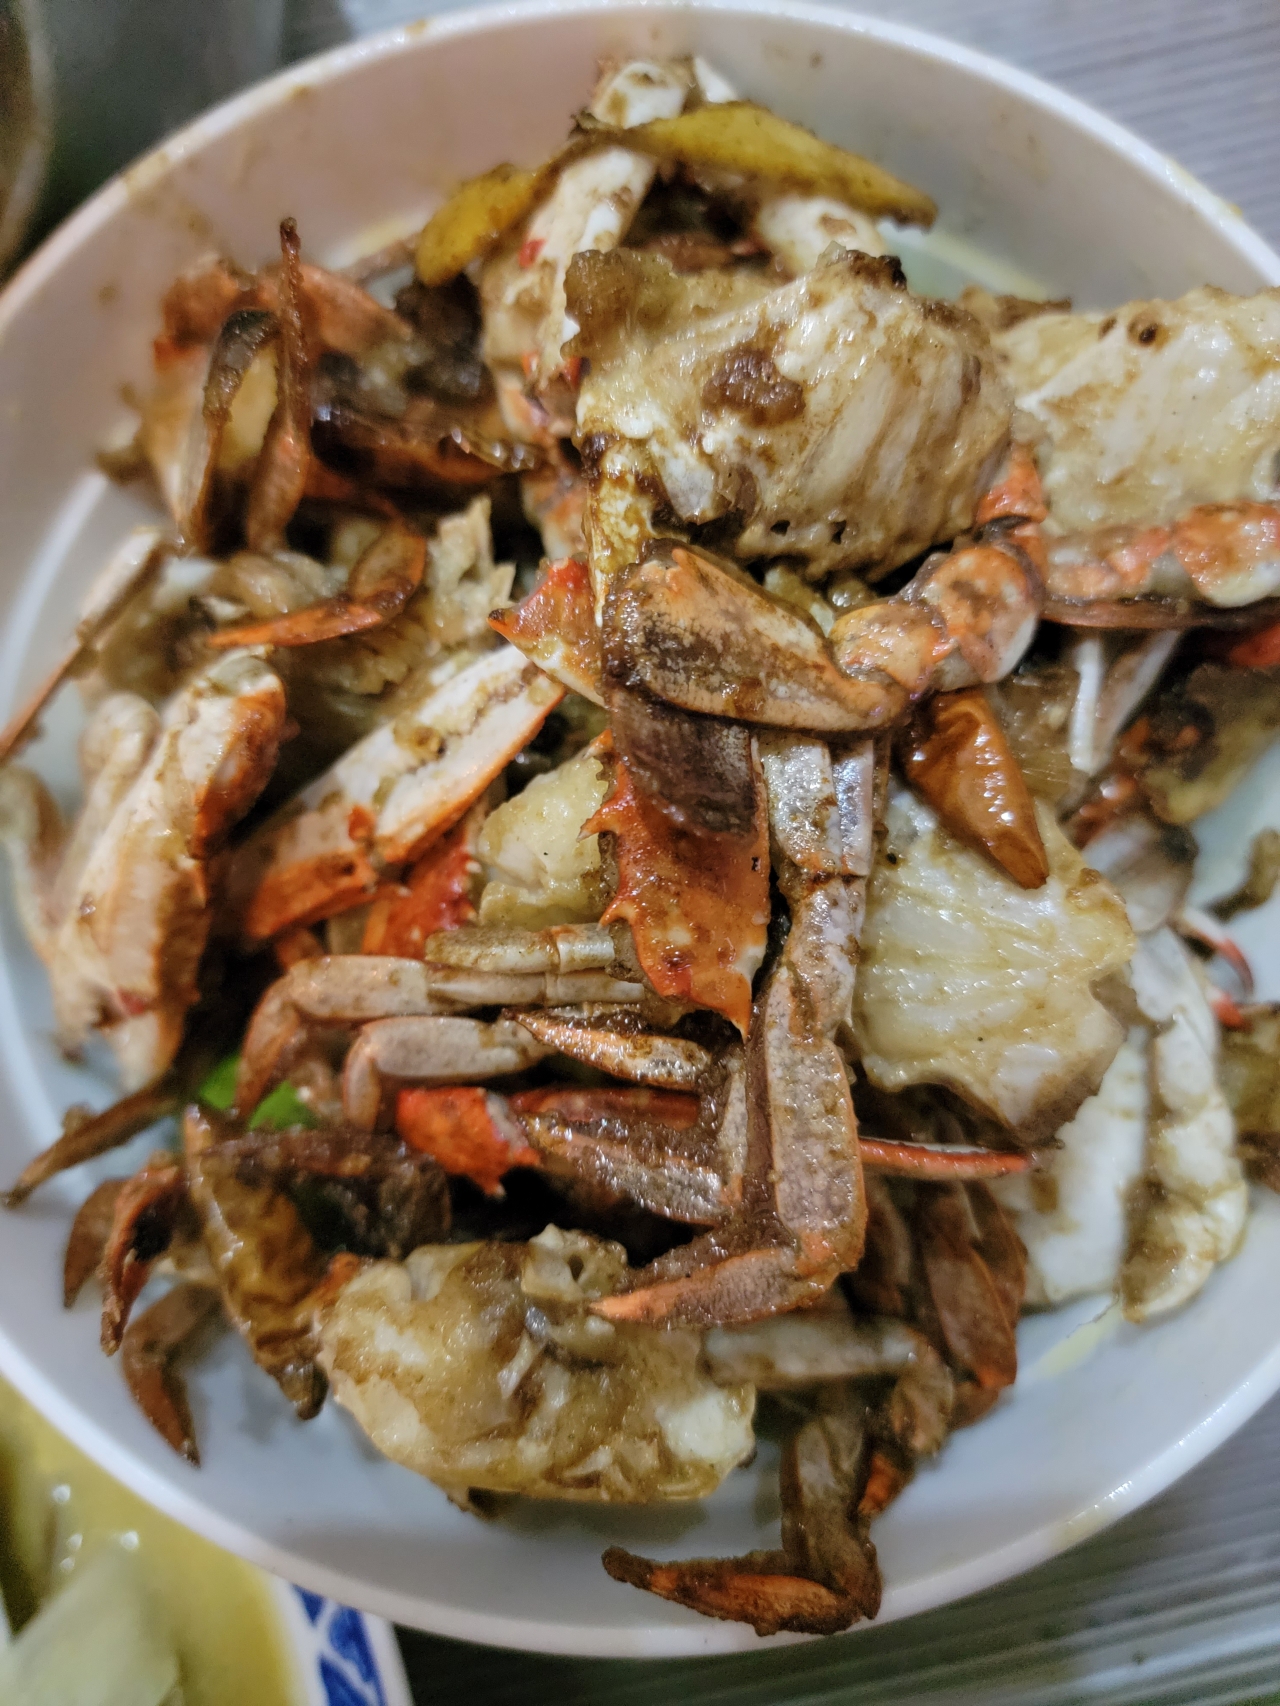 姜葱炒螃蟹的做法